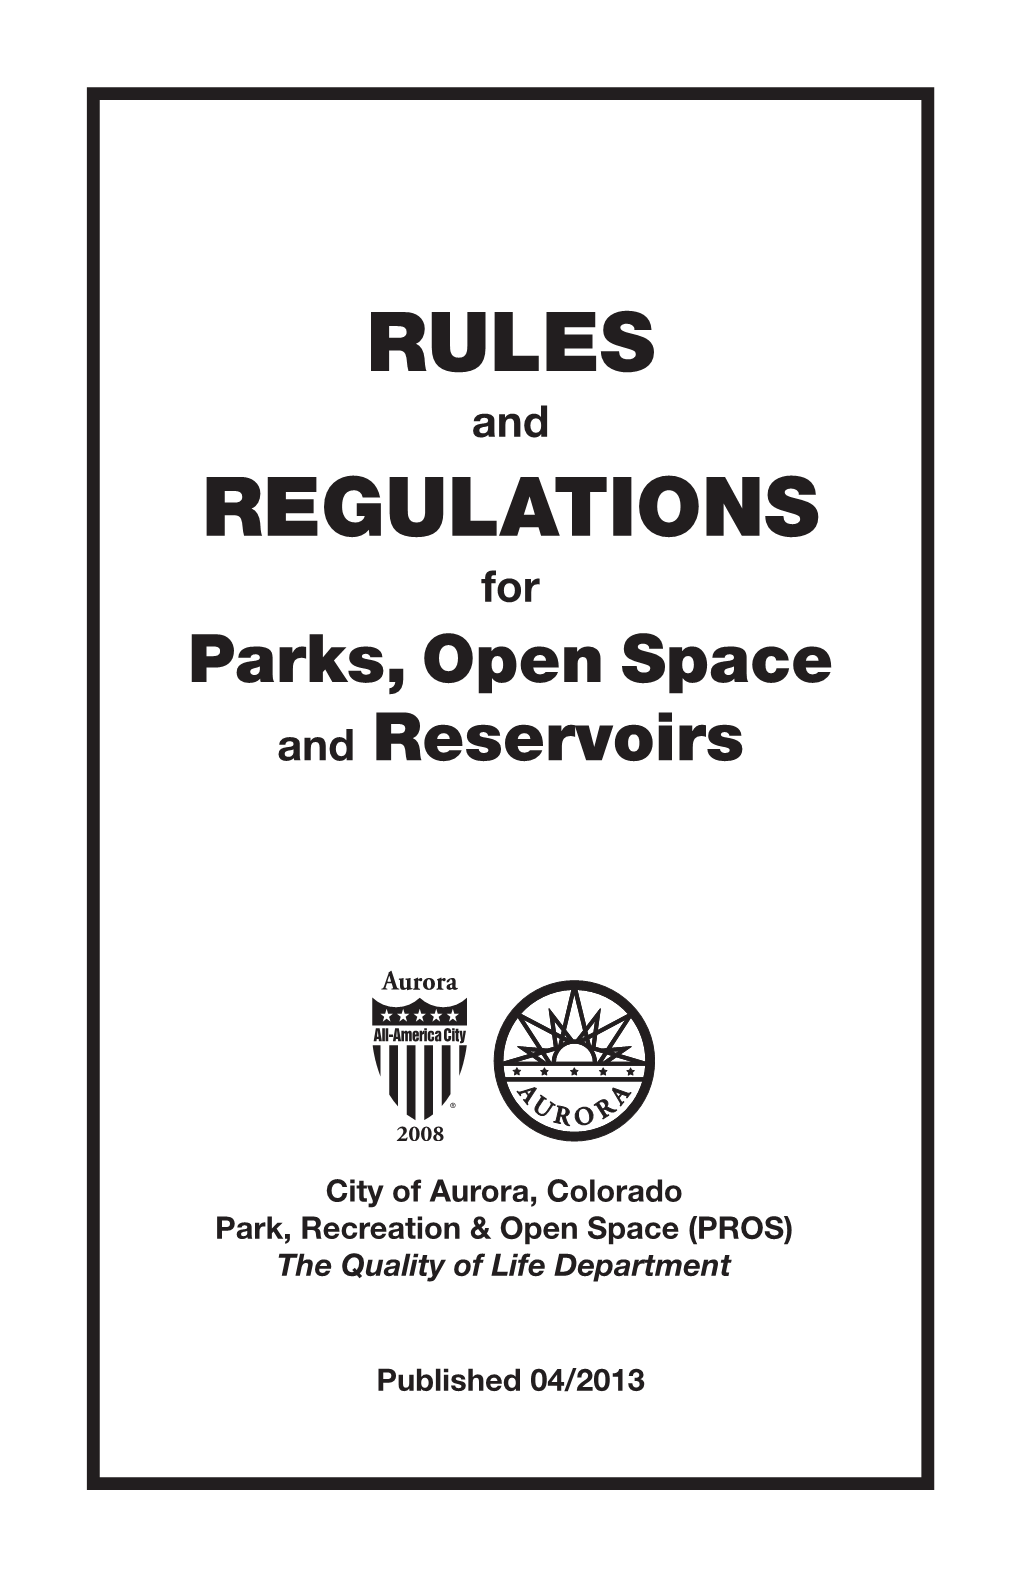 Rules Regulations